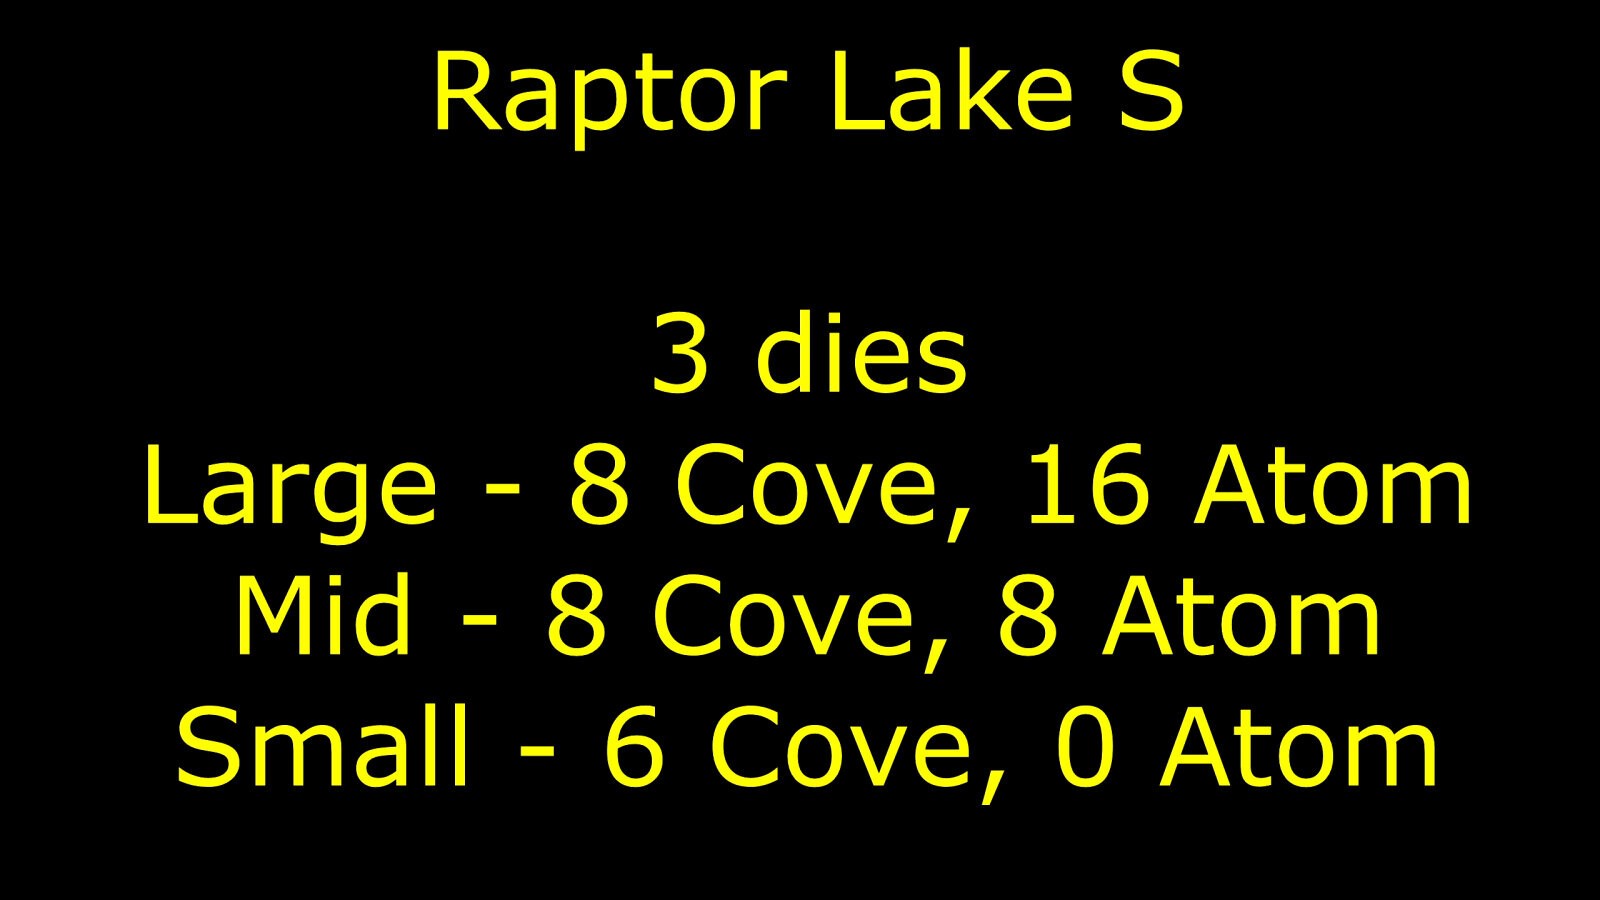 تسريب آخر يؤكد أن معالجات Raptor Lake-S المكتبية قد تأتي مع 24 نواة